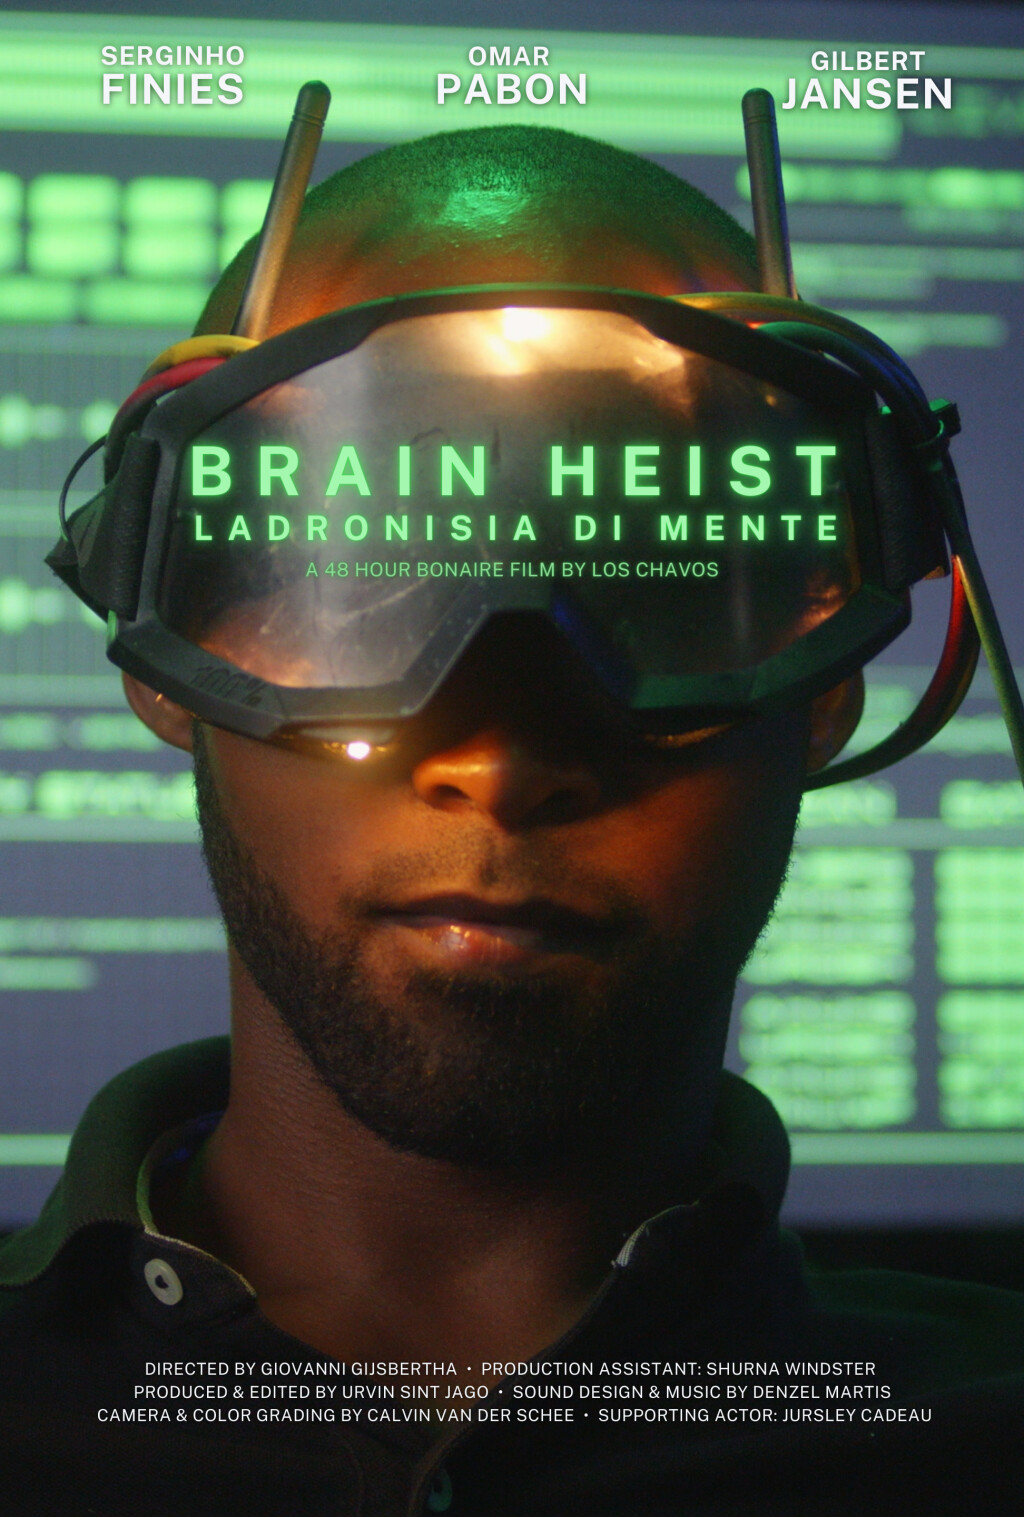 Filmposter for Brain Heist